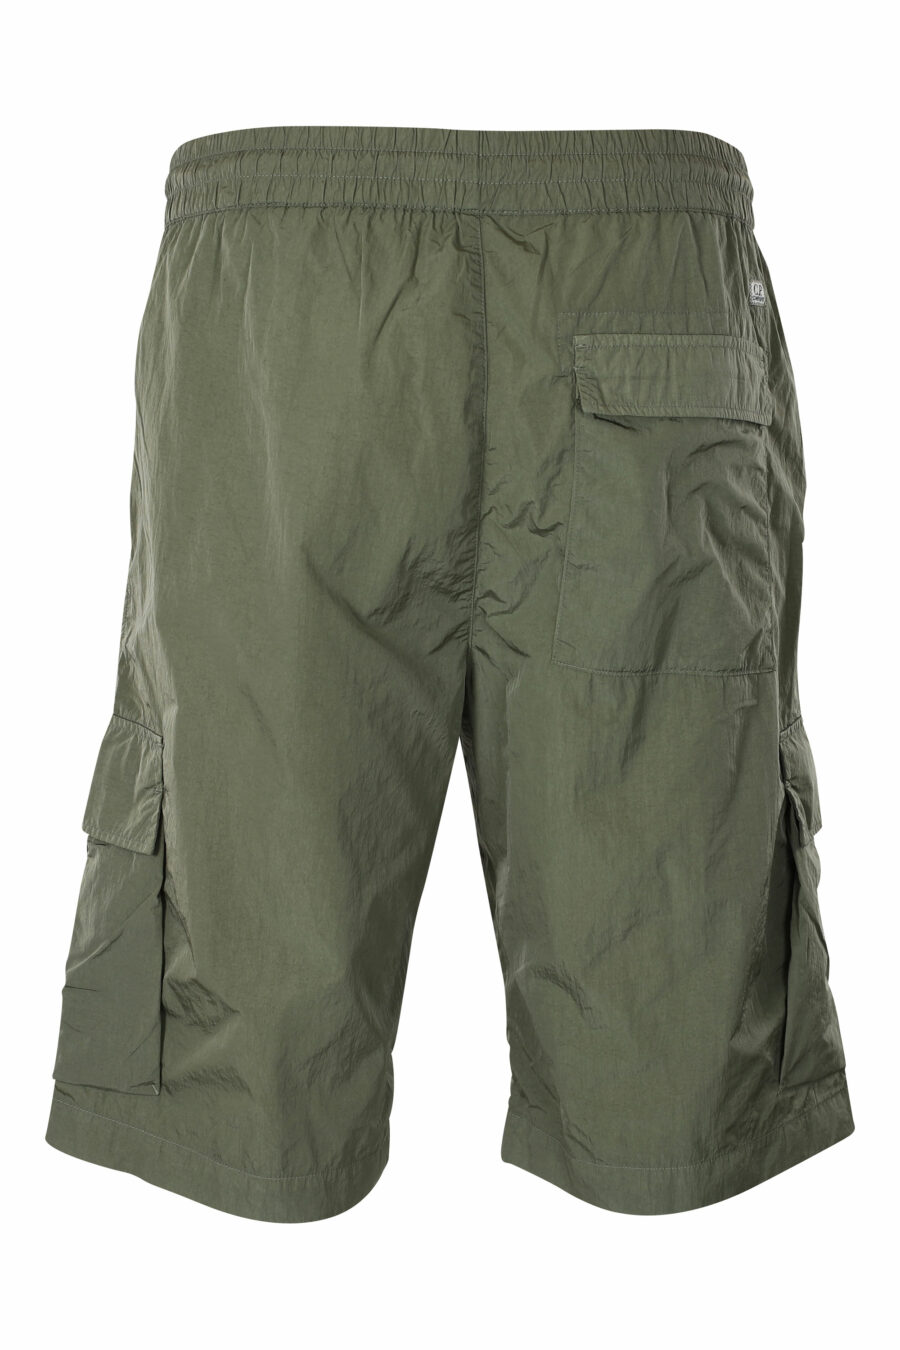 Pantalón corto midi verde militar estilo cargo con minilogo circular - IMG 9586